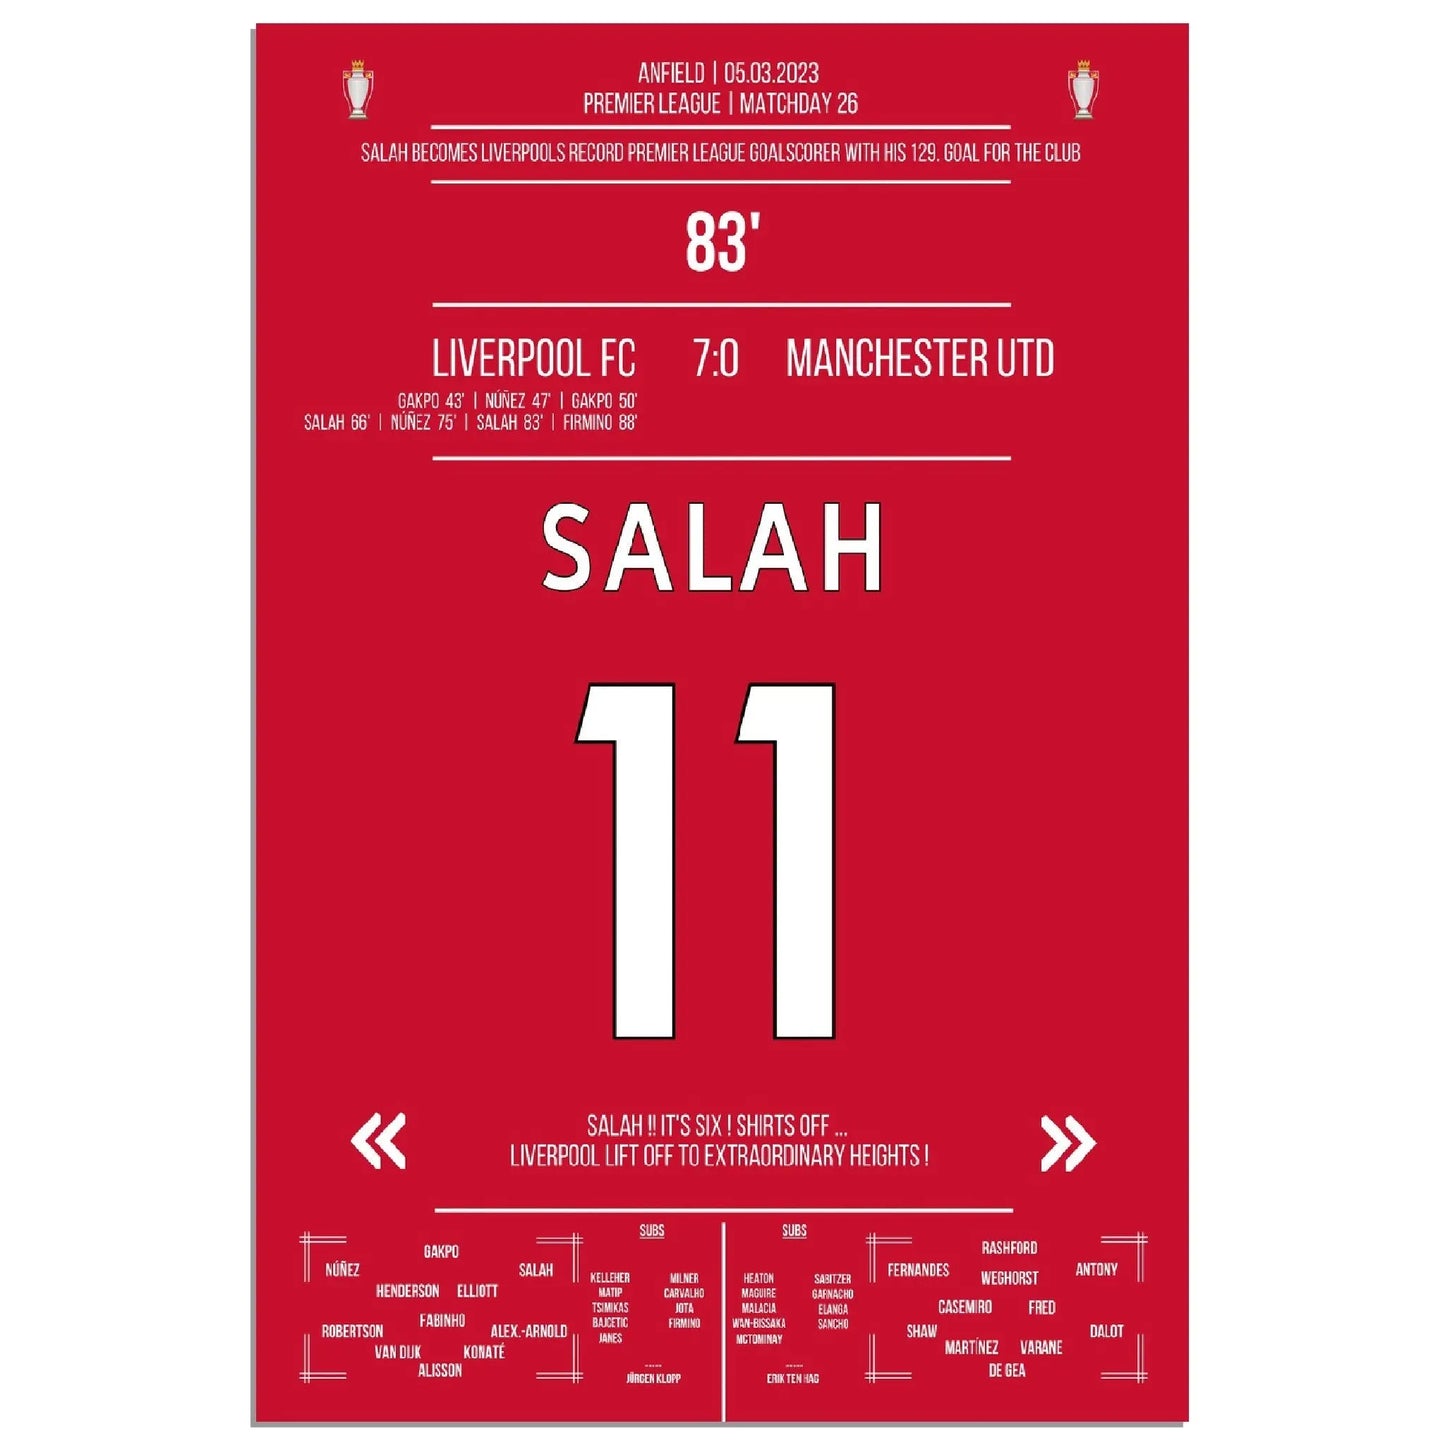 Liverpool zerlegt ManU - Salah mit Rekord-Tor 